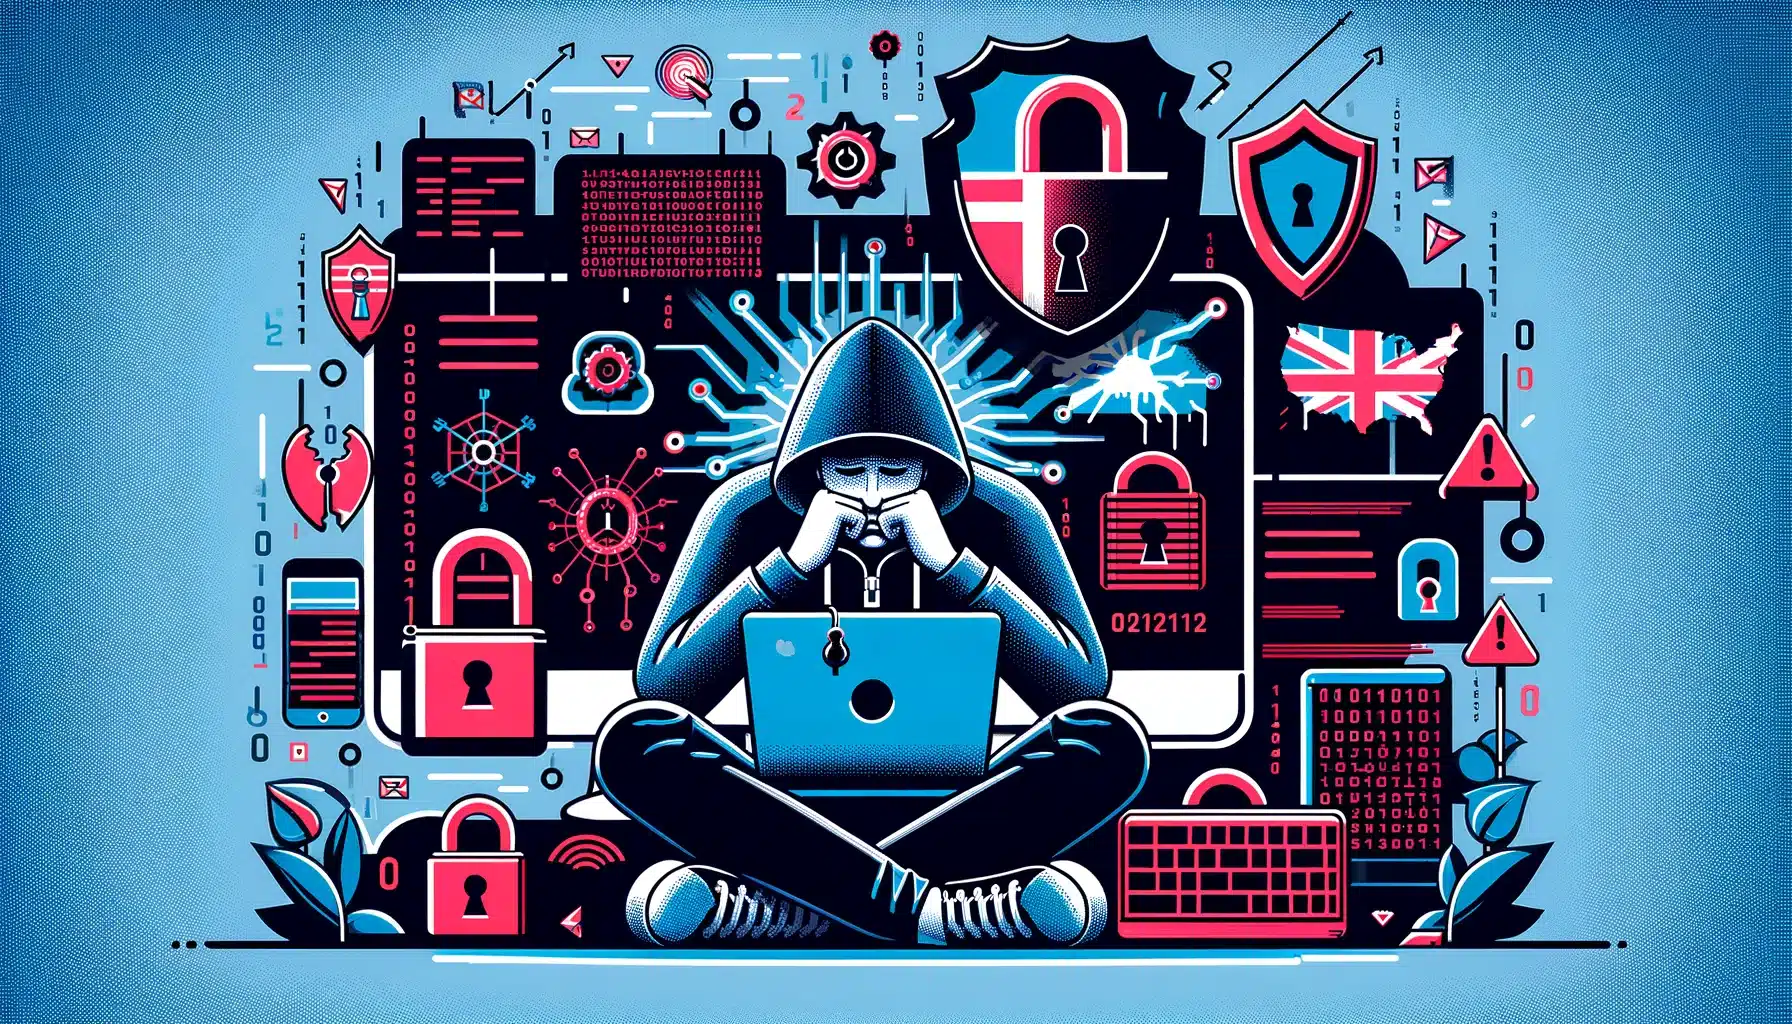 Ofiara ataku hakerskiego skarży się na brak odpowiednich polityk przeciwdziałania oszustwom w Wielkiej Brytanii